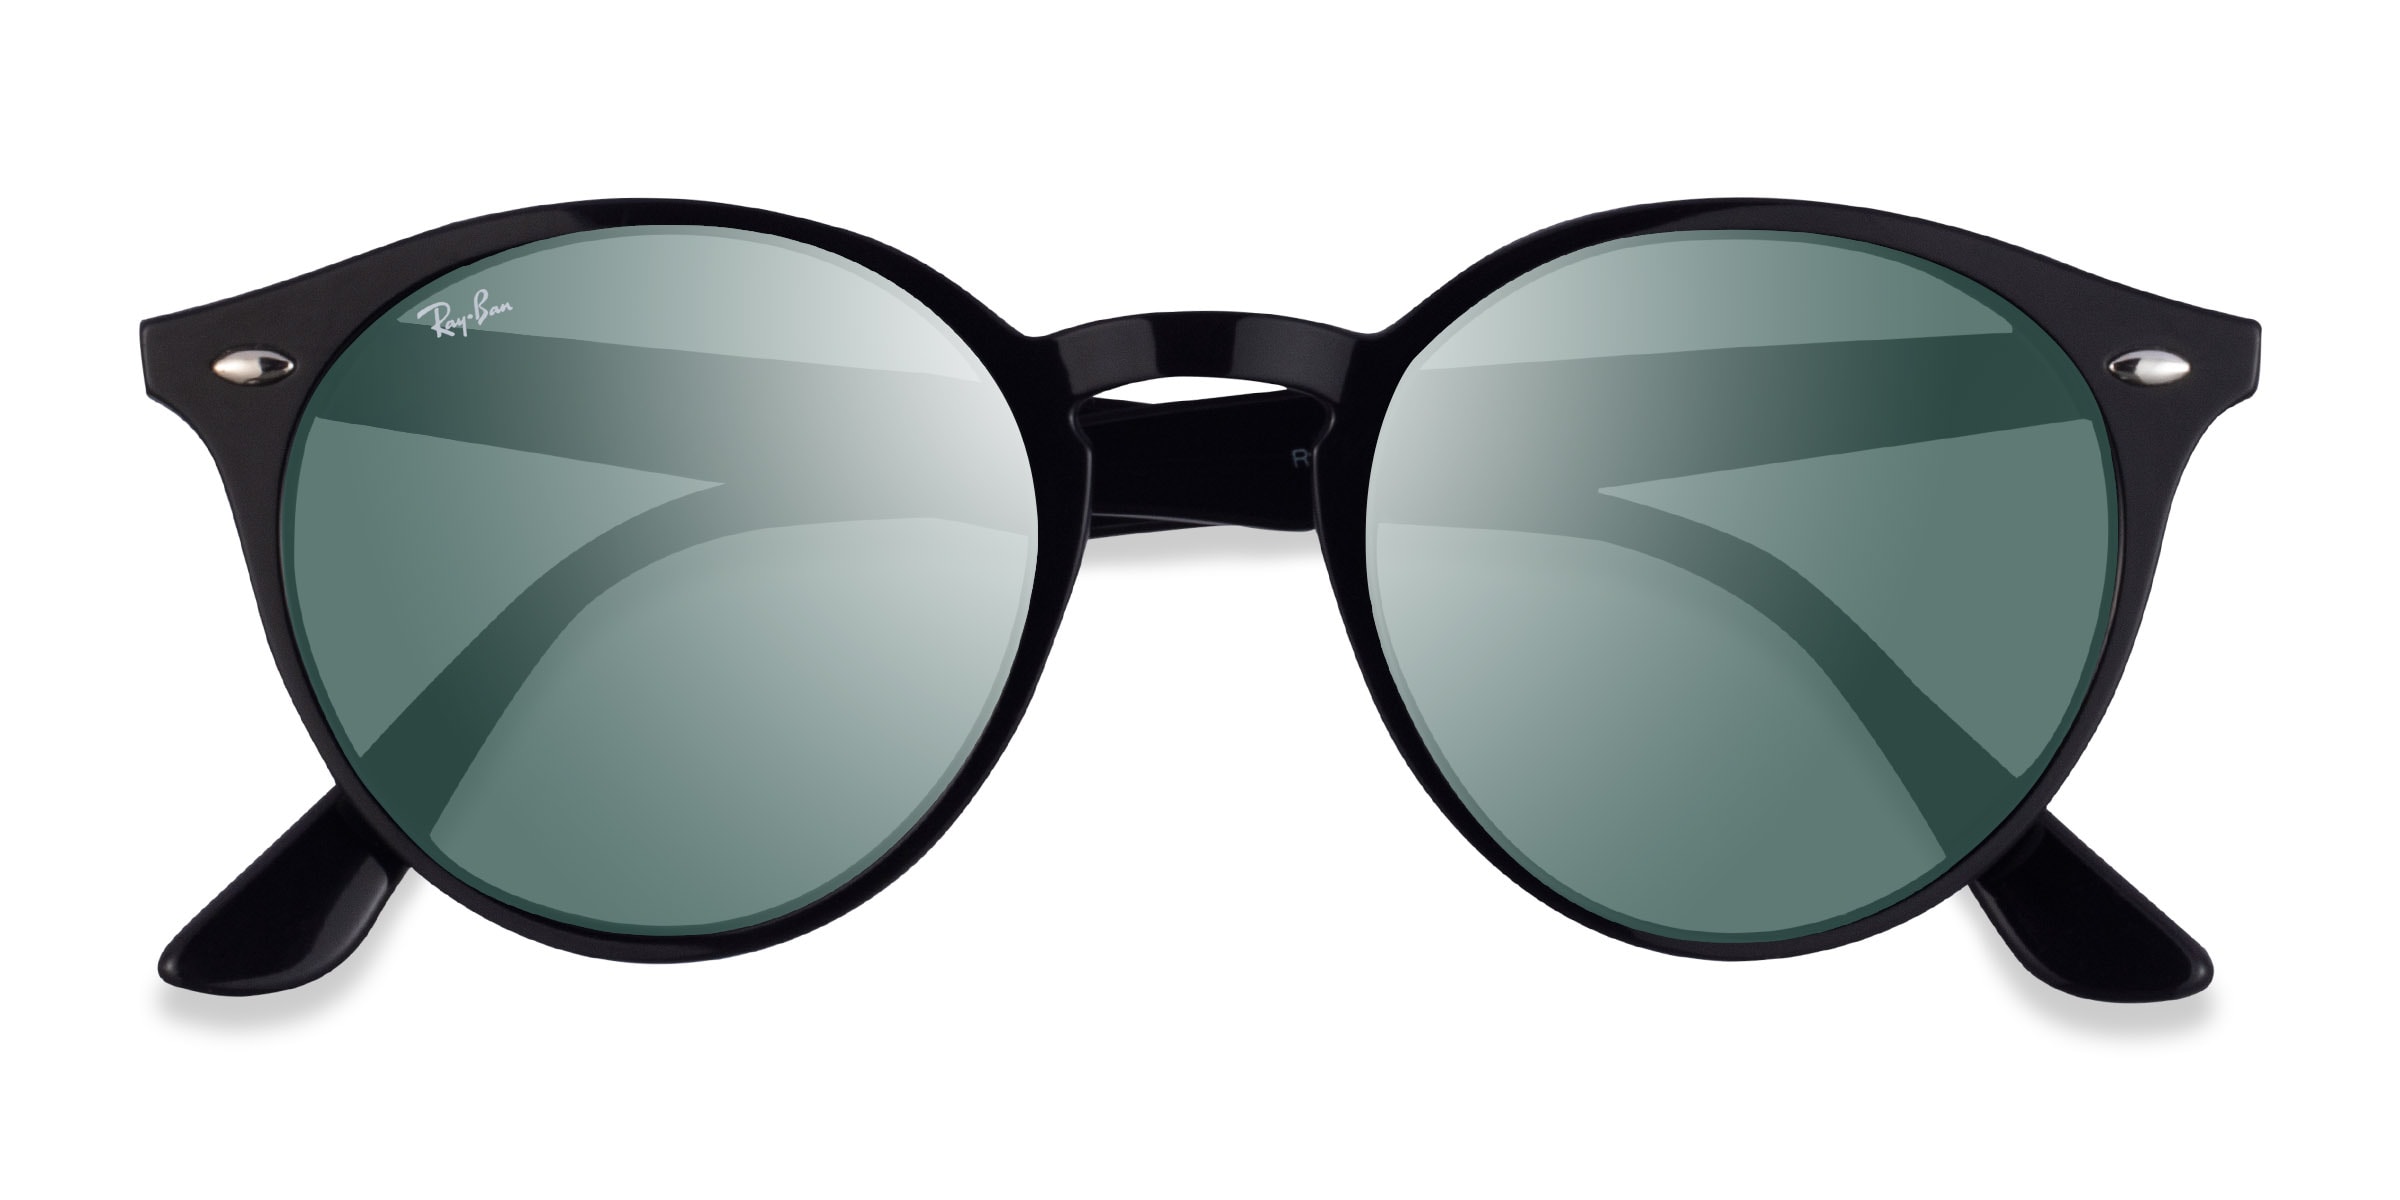 Buy Ray-Ban Rectangular Sunglasses Green For Men & Women Online @ Best  Prices in India | Flipkart.com